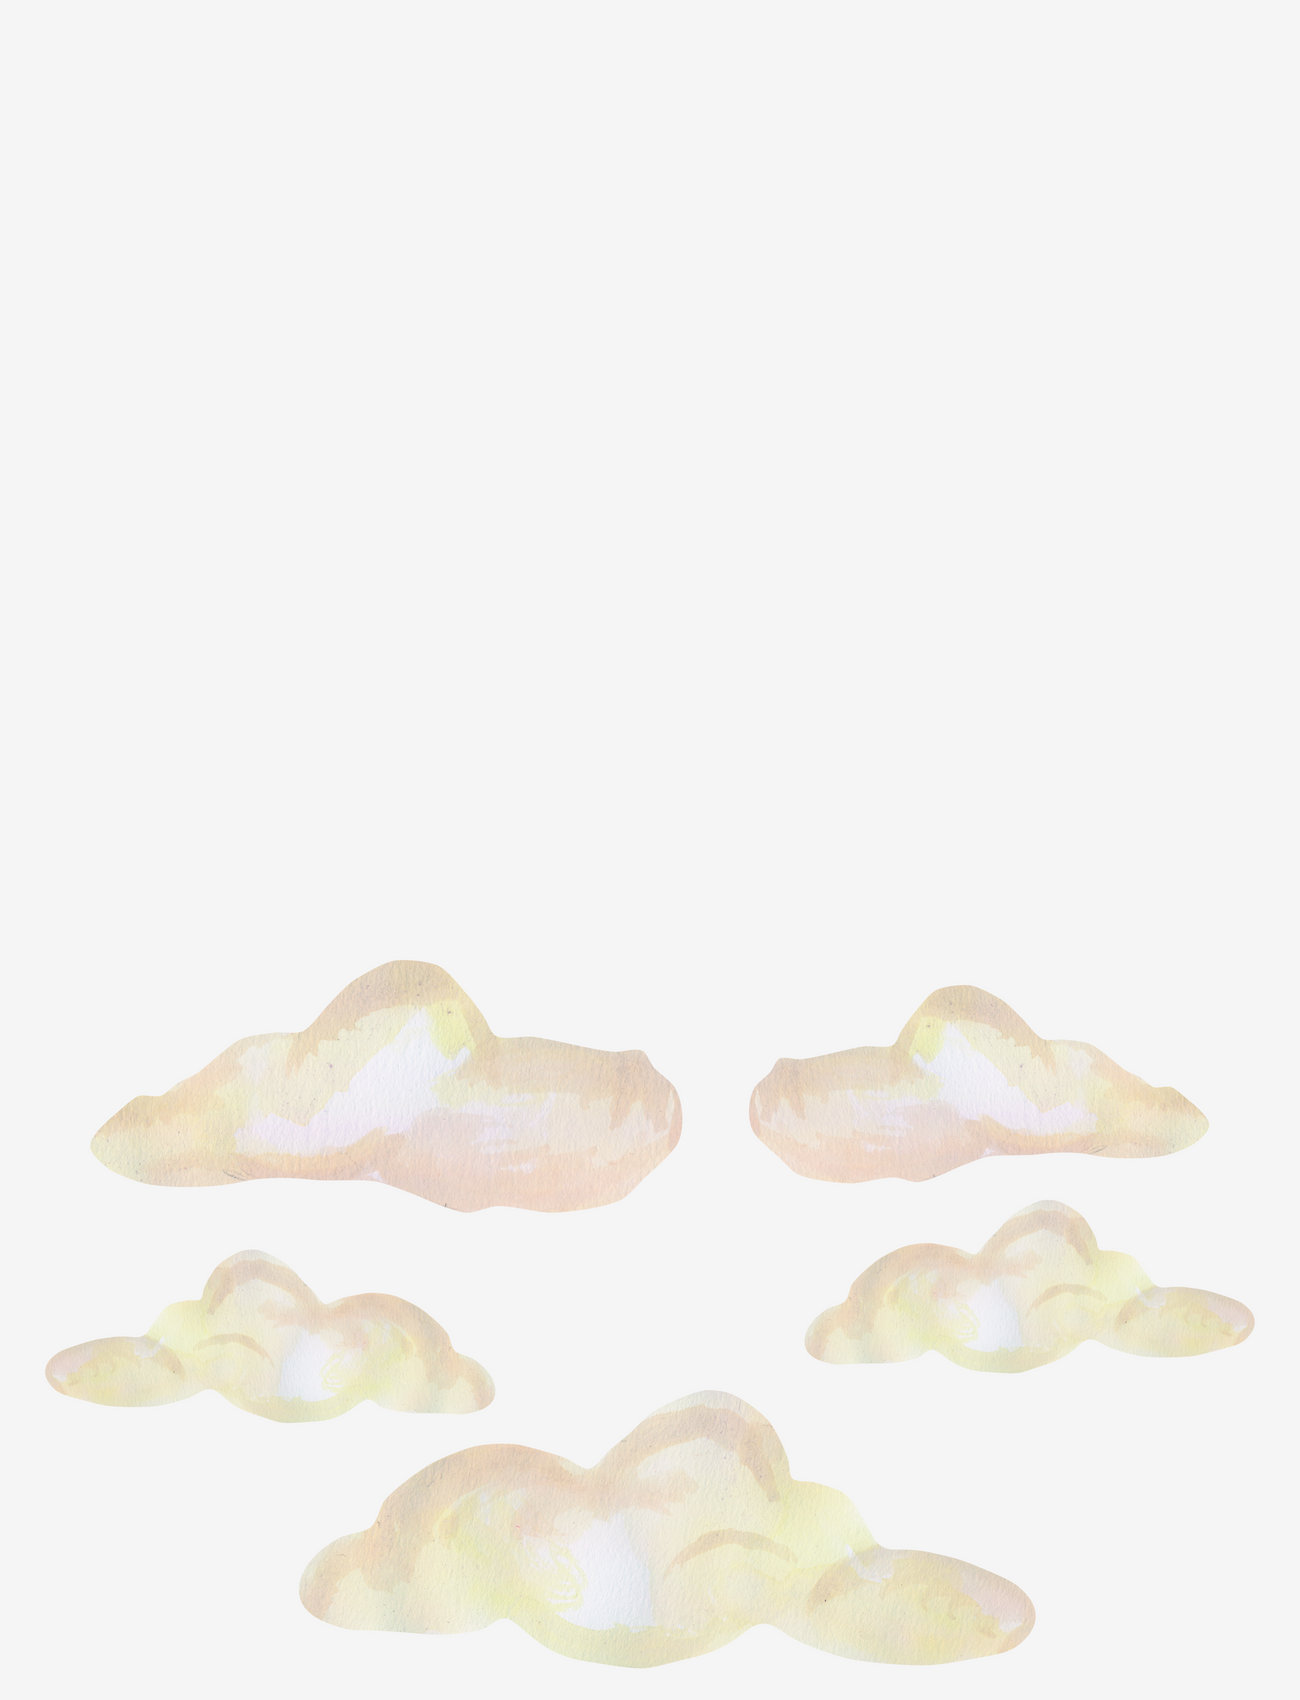 That's Mine - Wall sticker Clouds 5 pcs. - die niedrigsten preise - multicolor - 0